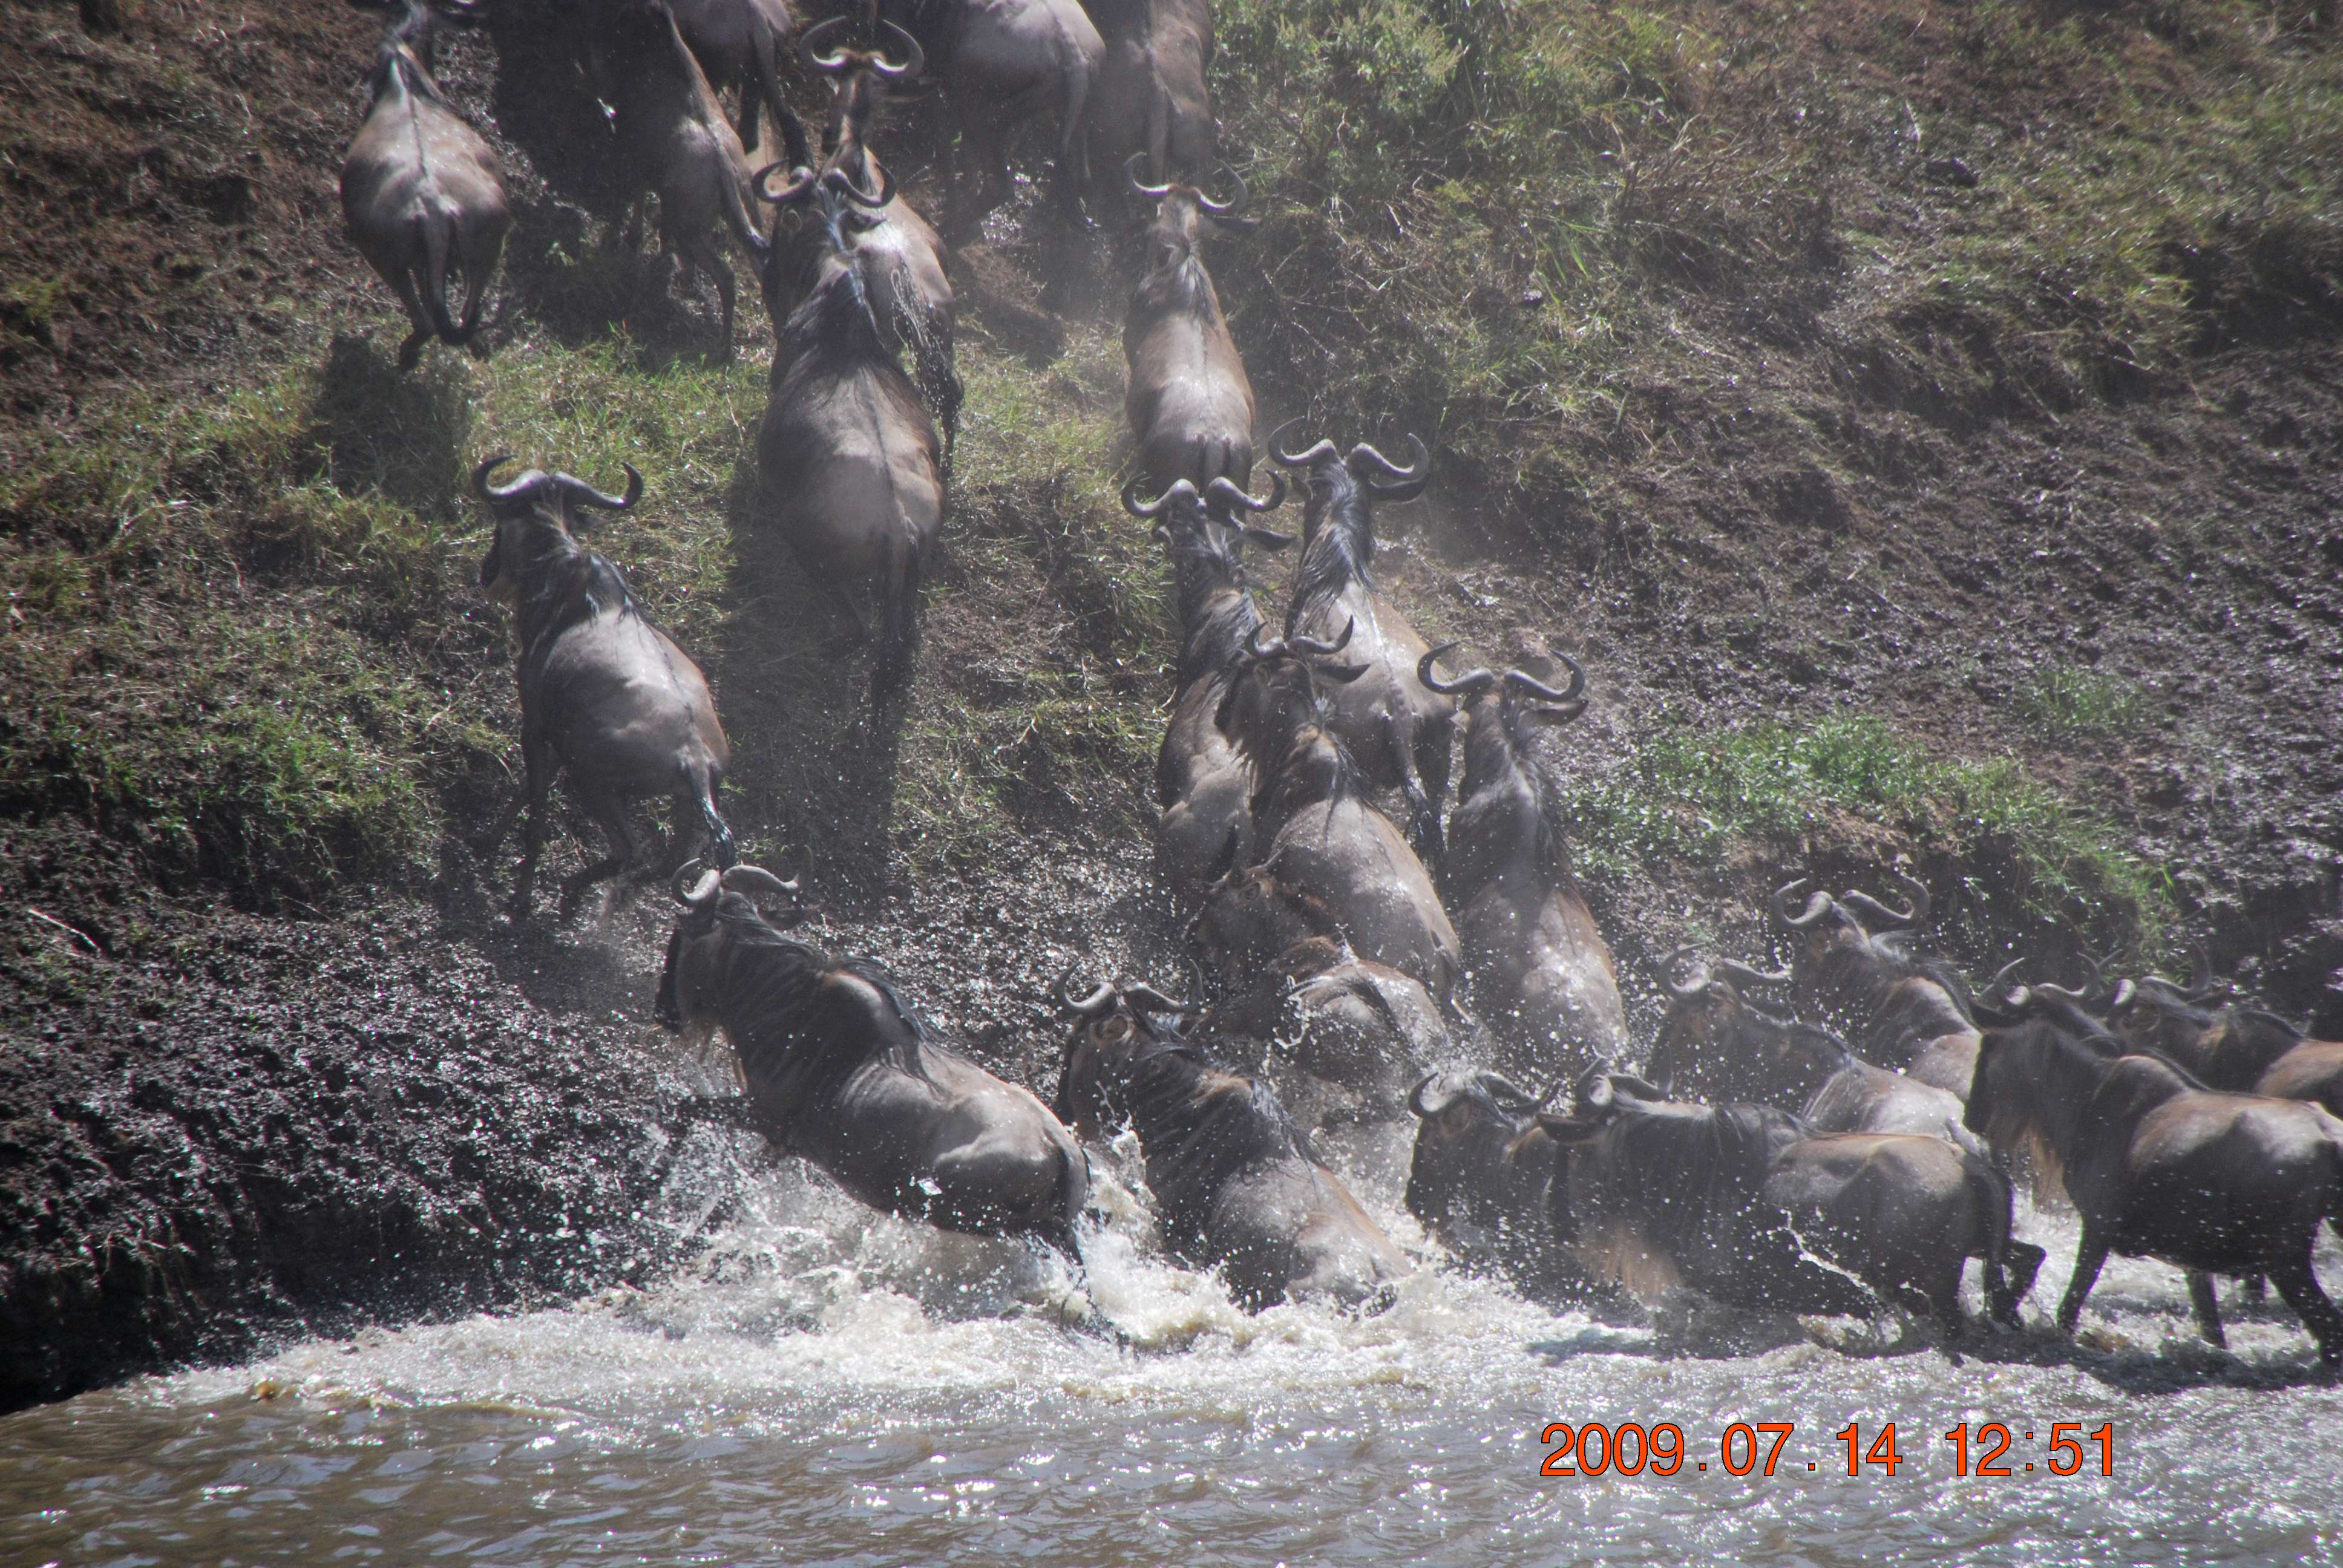 Kenia una experiencia inolvidable - Blogs de Kenia - El cruce del río Mara. (9)